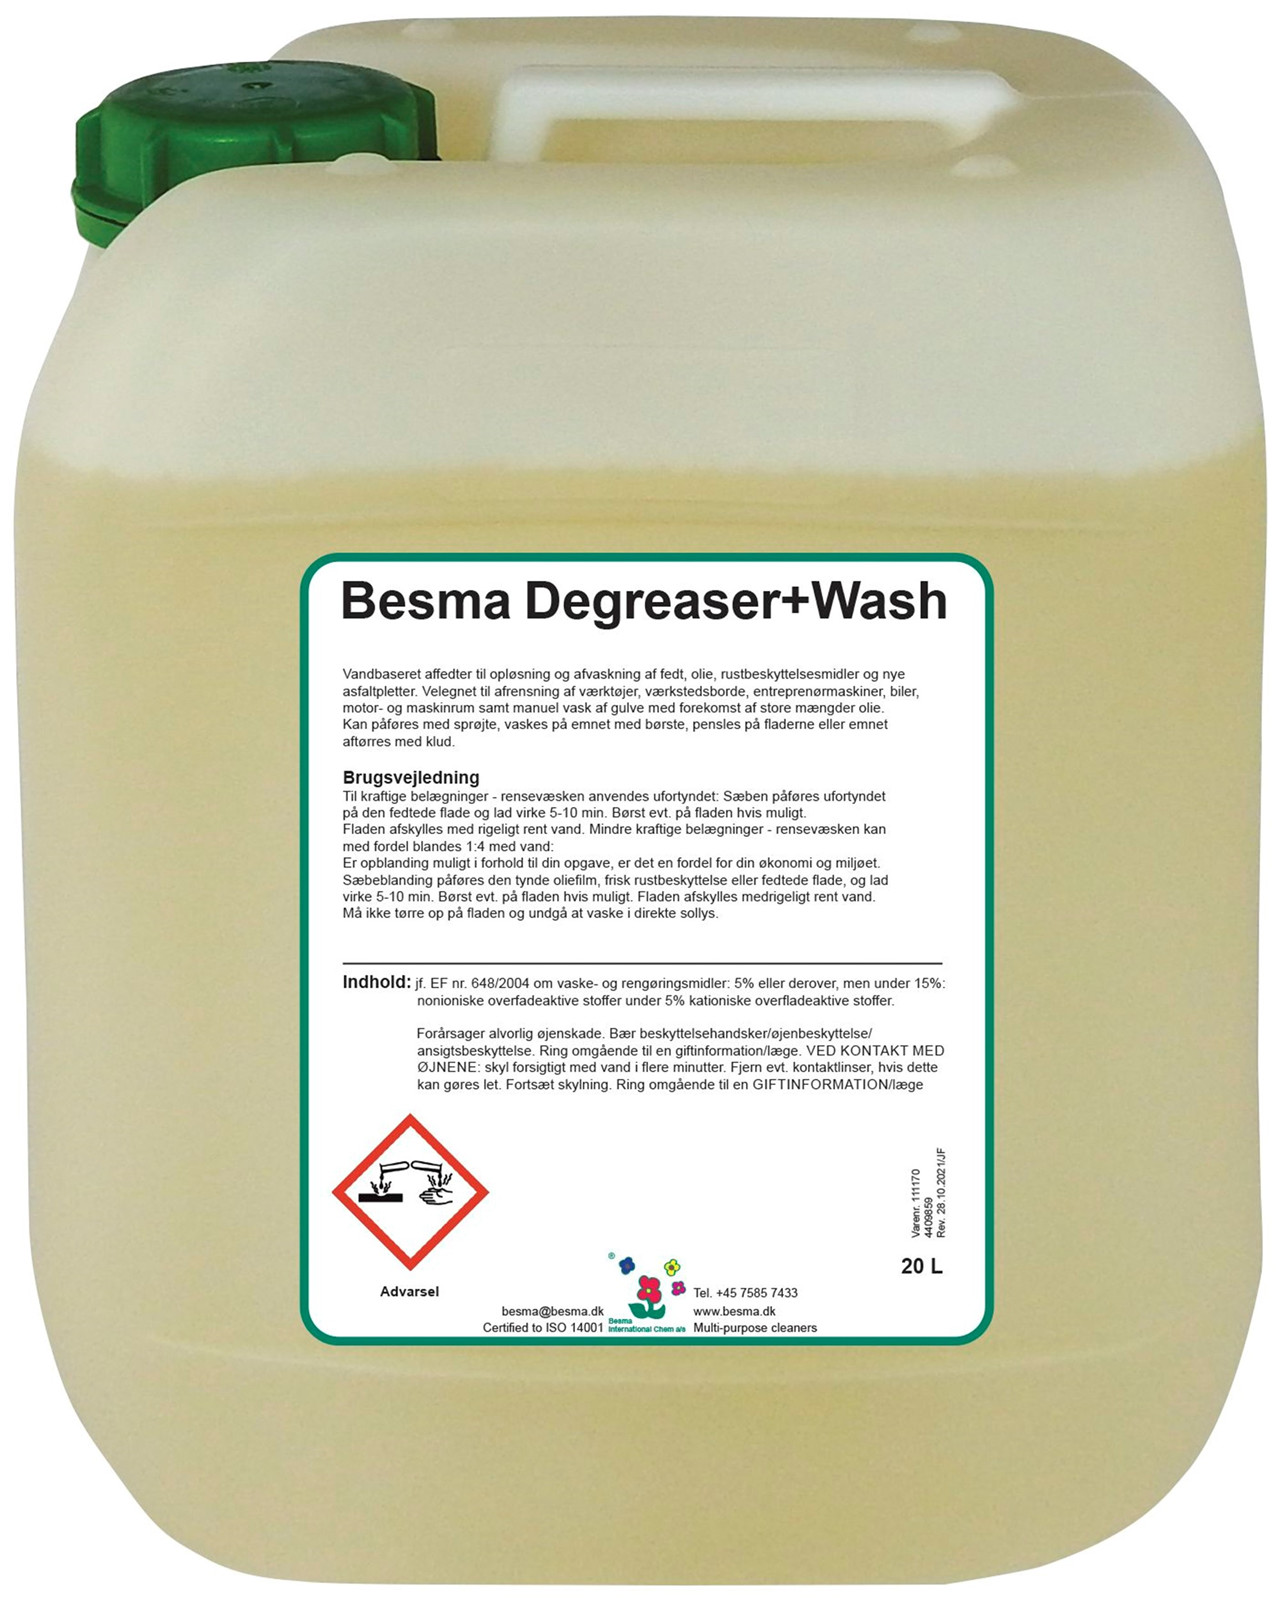 Se Besma Degreaser+Wash 5 L hos Specialbutikken